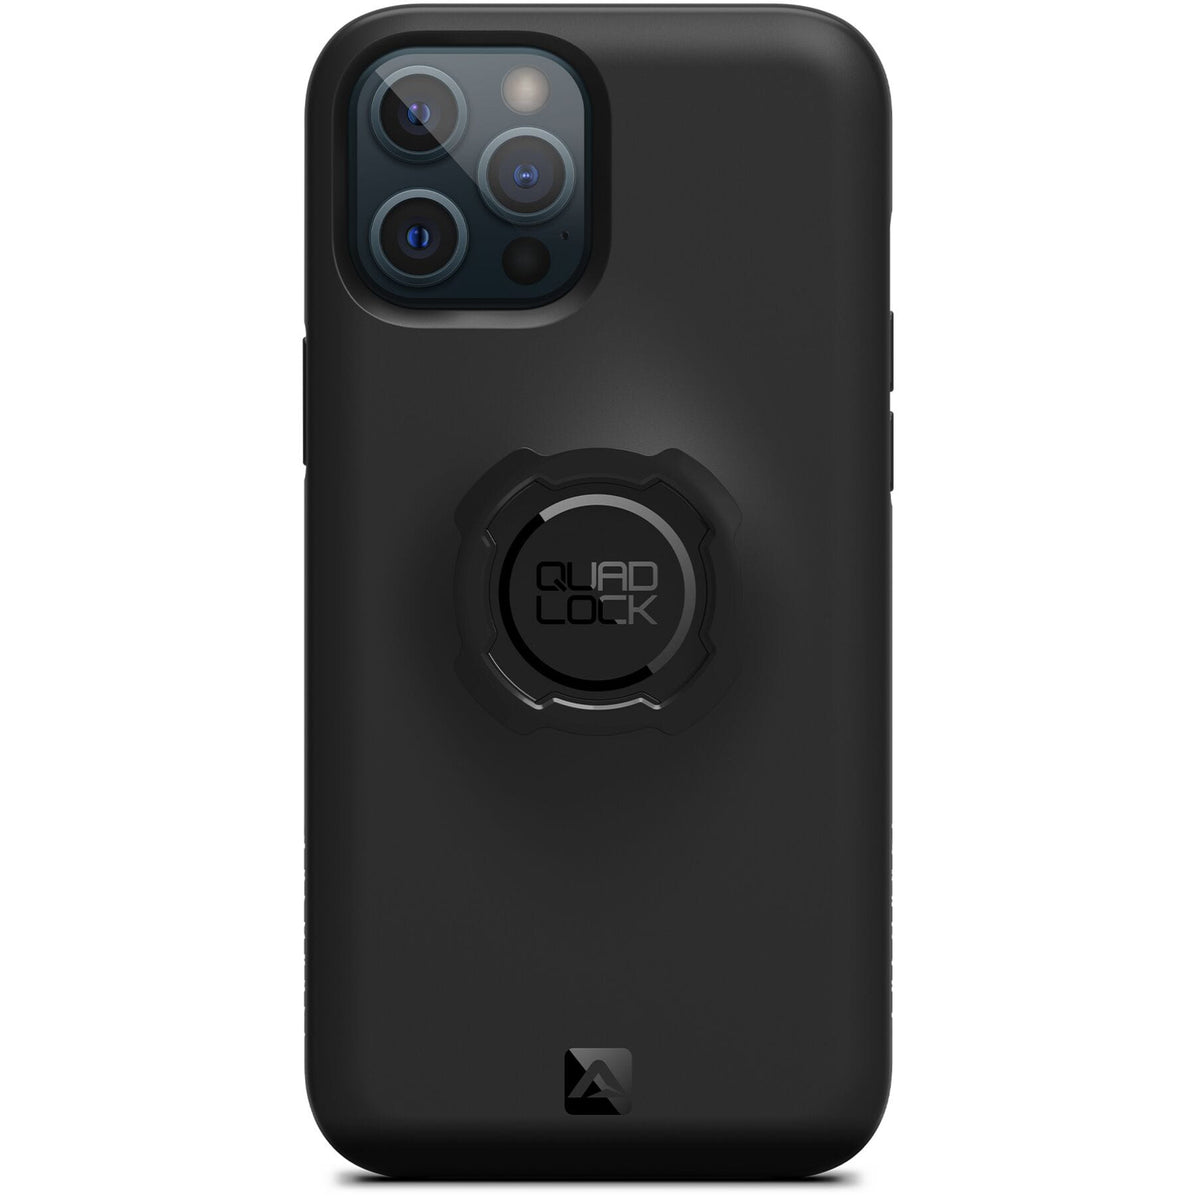 Quad Lock Original Case - iPhone 12 Pro Max